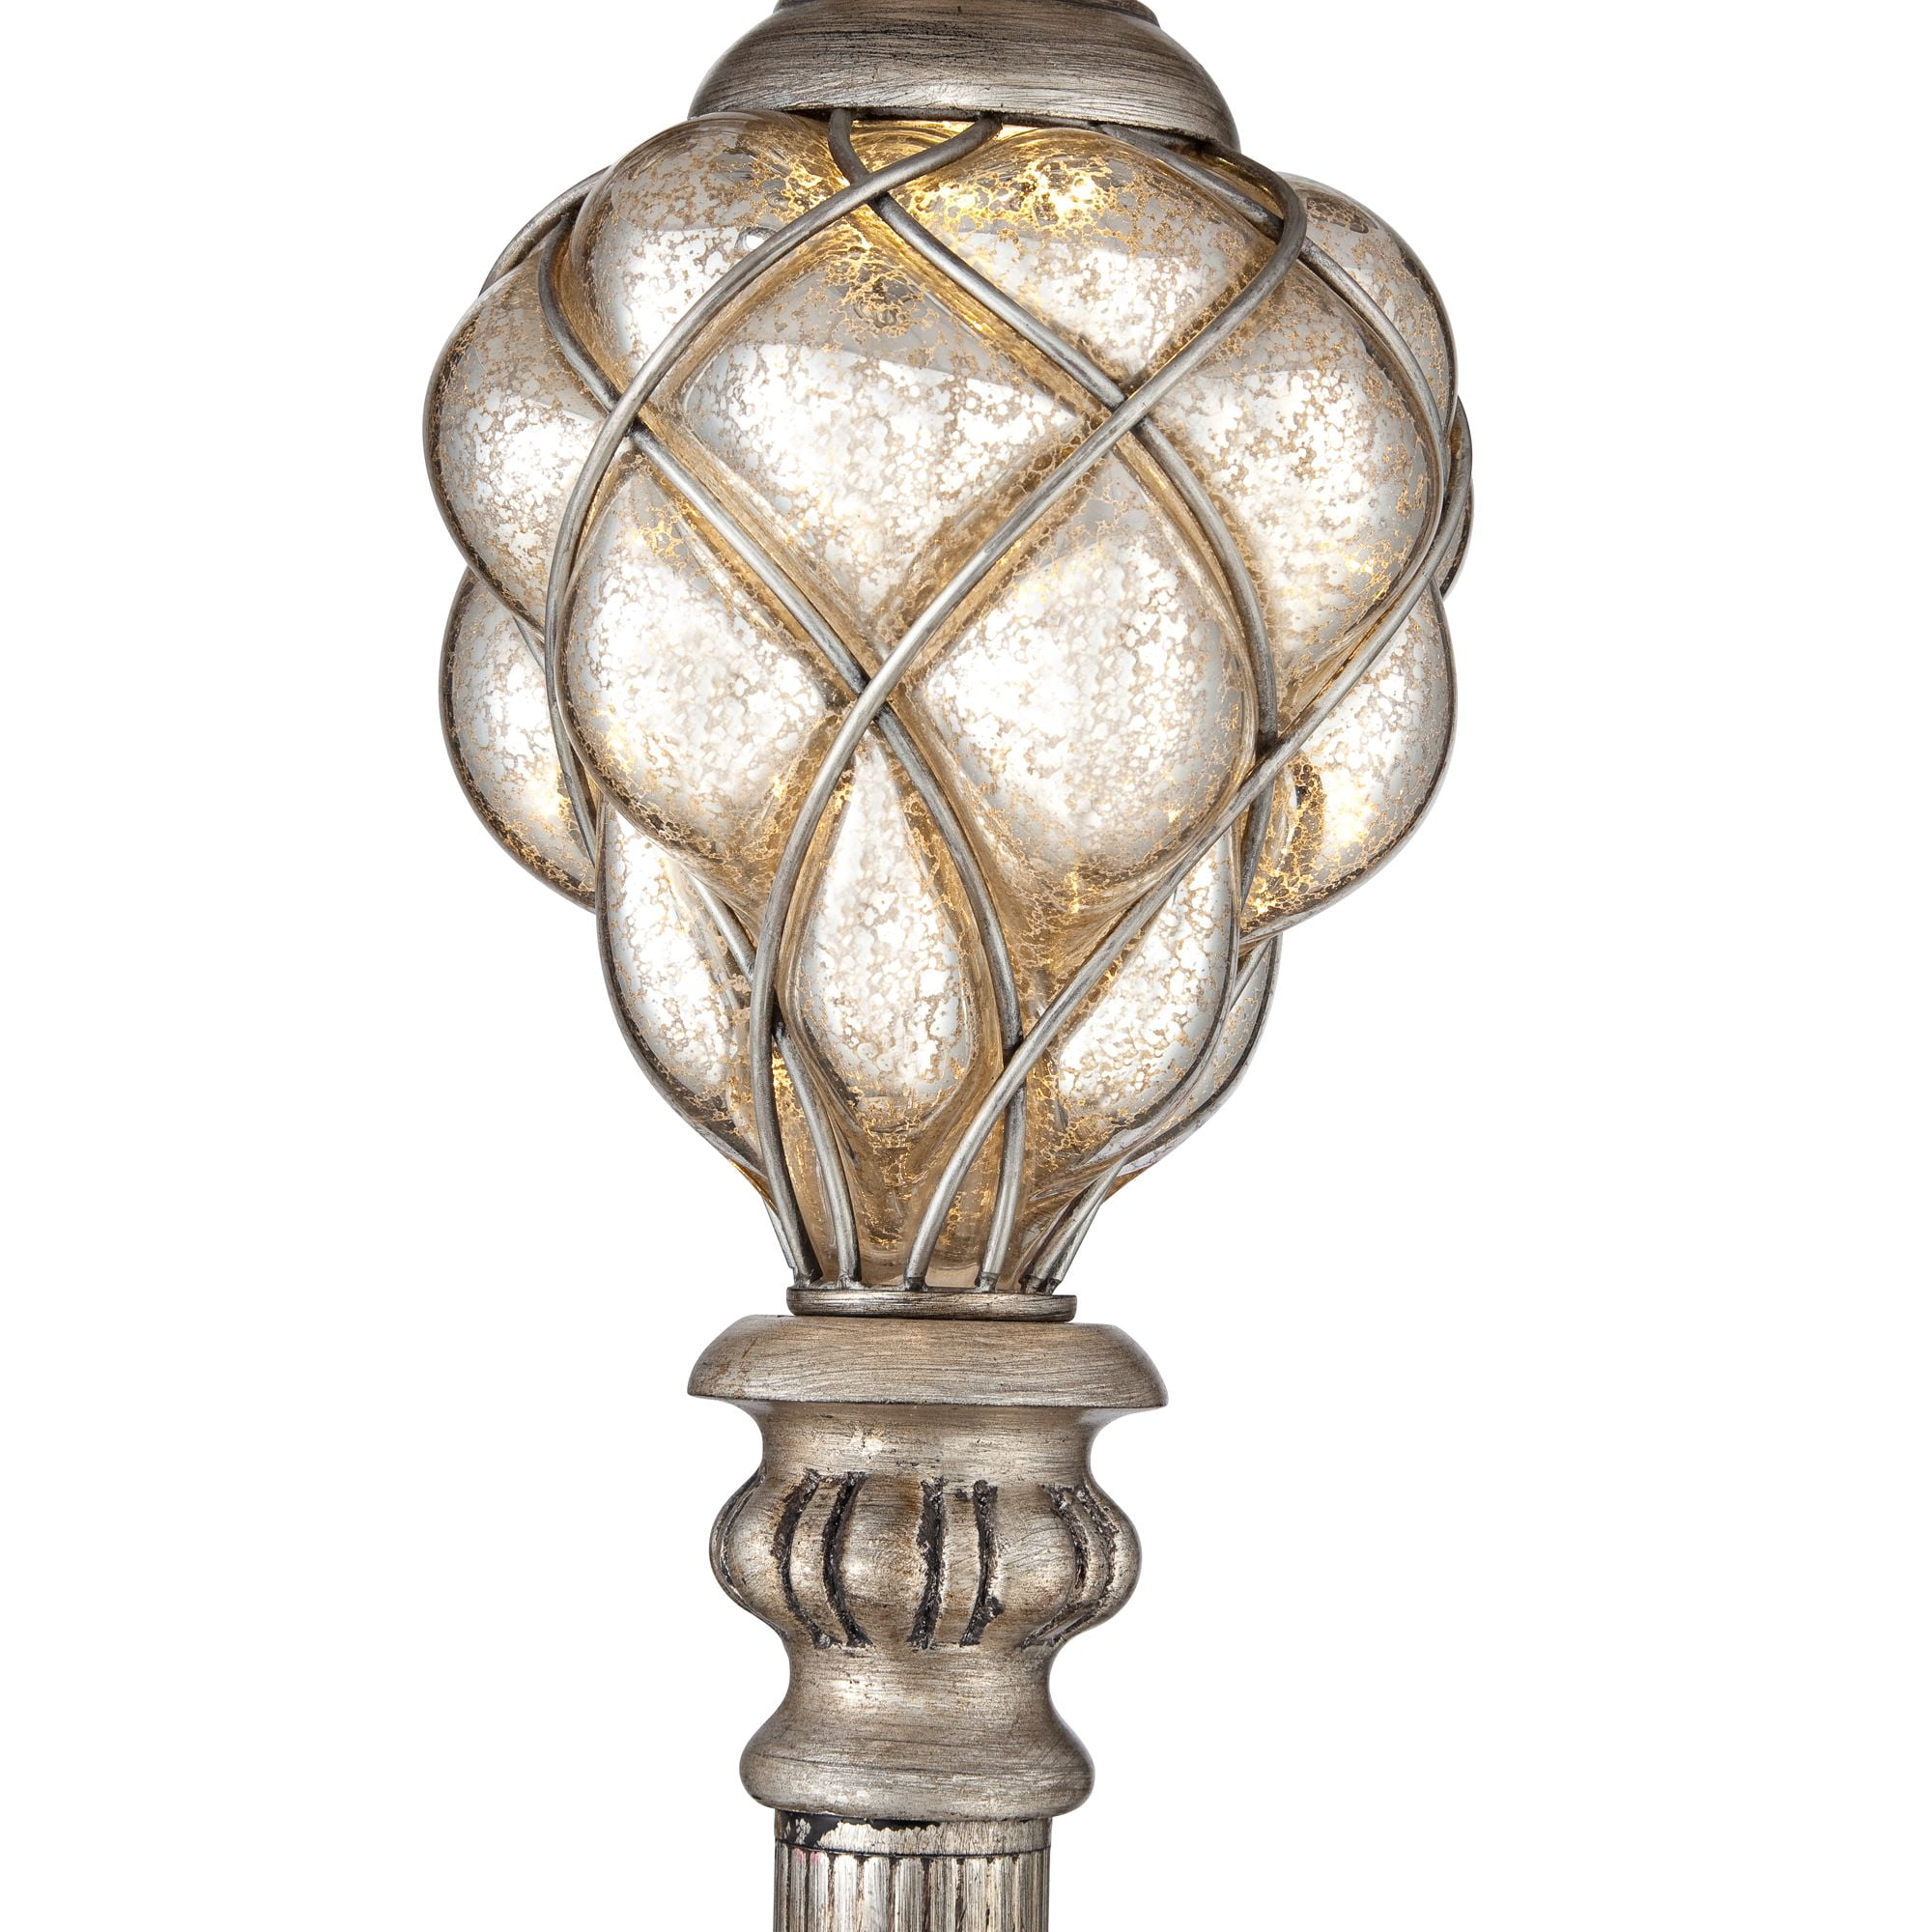 Satie 63 LED Novelty Floor Lamp  Novelty floor lamp, Floor lamp